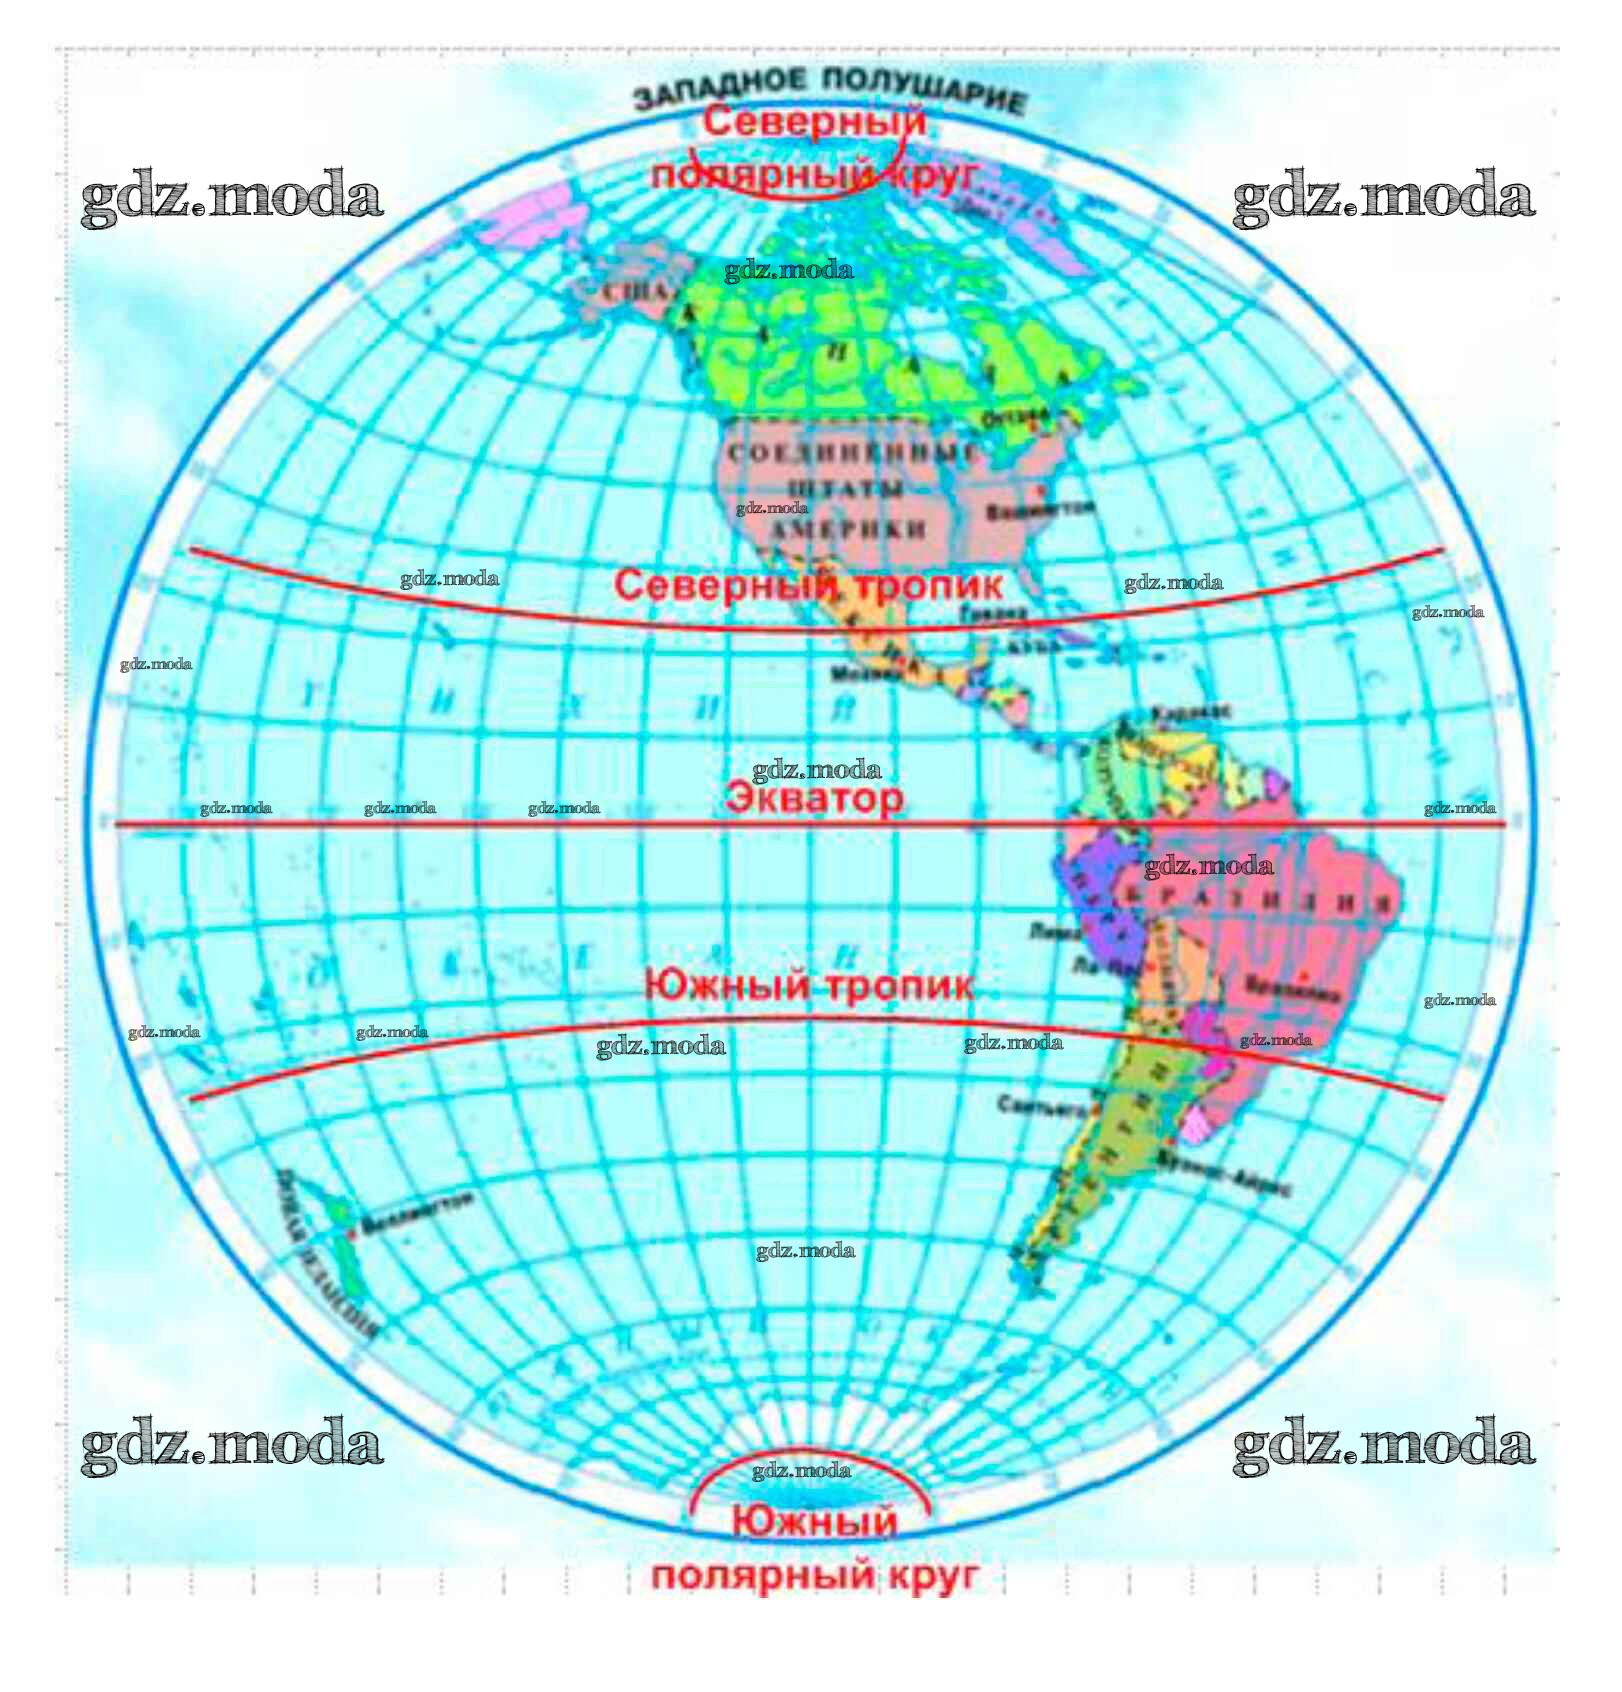 Полушарие лондона. Тропики Южного полушария. Северные тропики на карте полушарий. На карте полушарий Найдите Экватор Северный и Южный тропики. На контурную карту полушарий нанести Экватор.